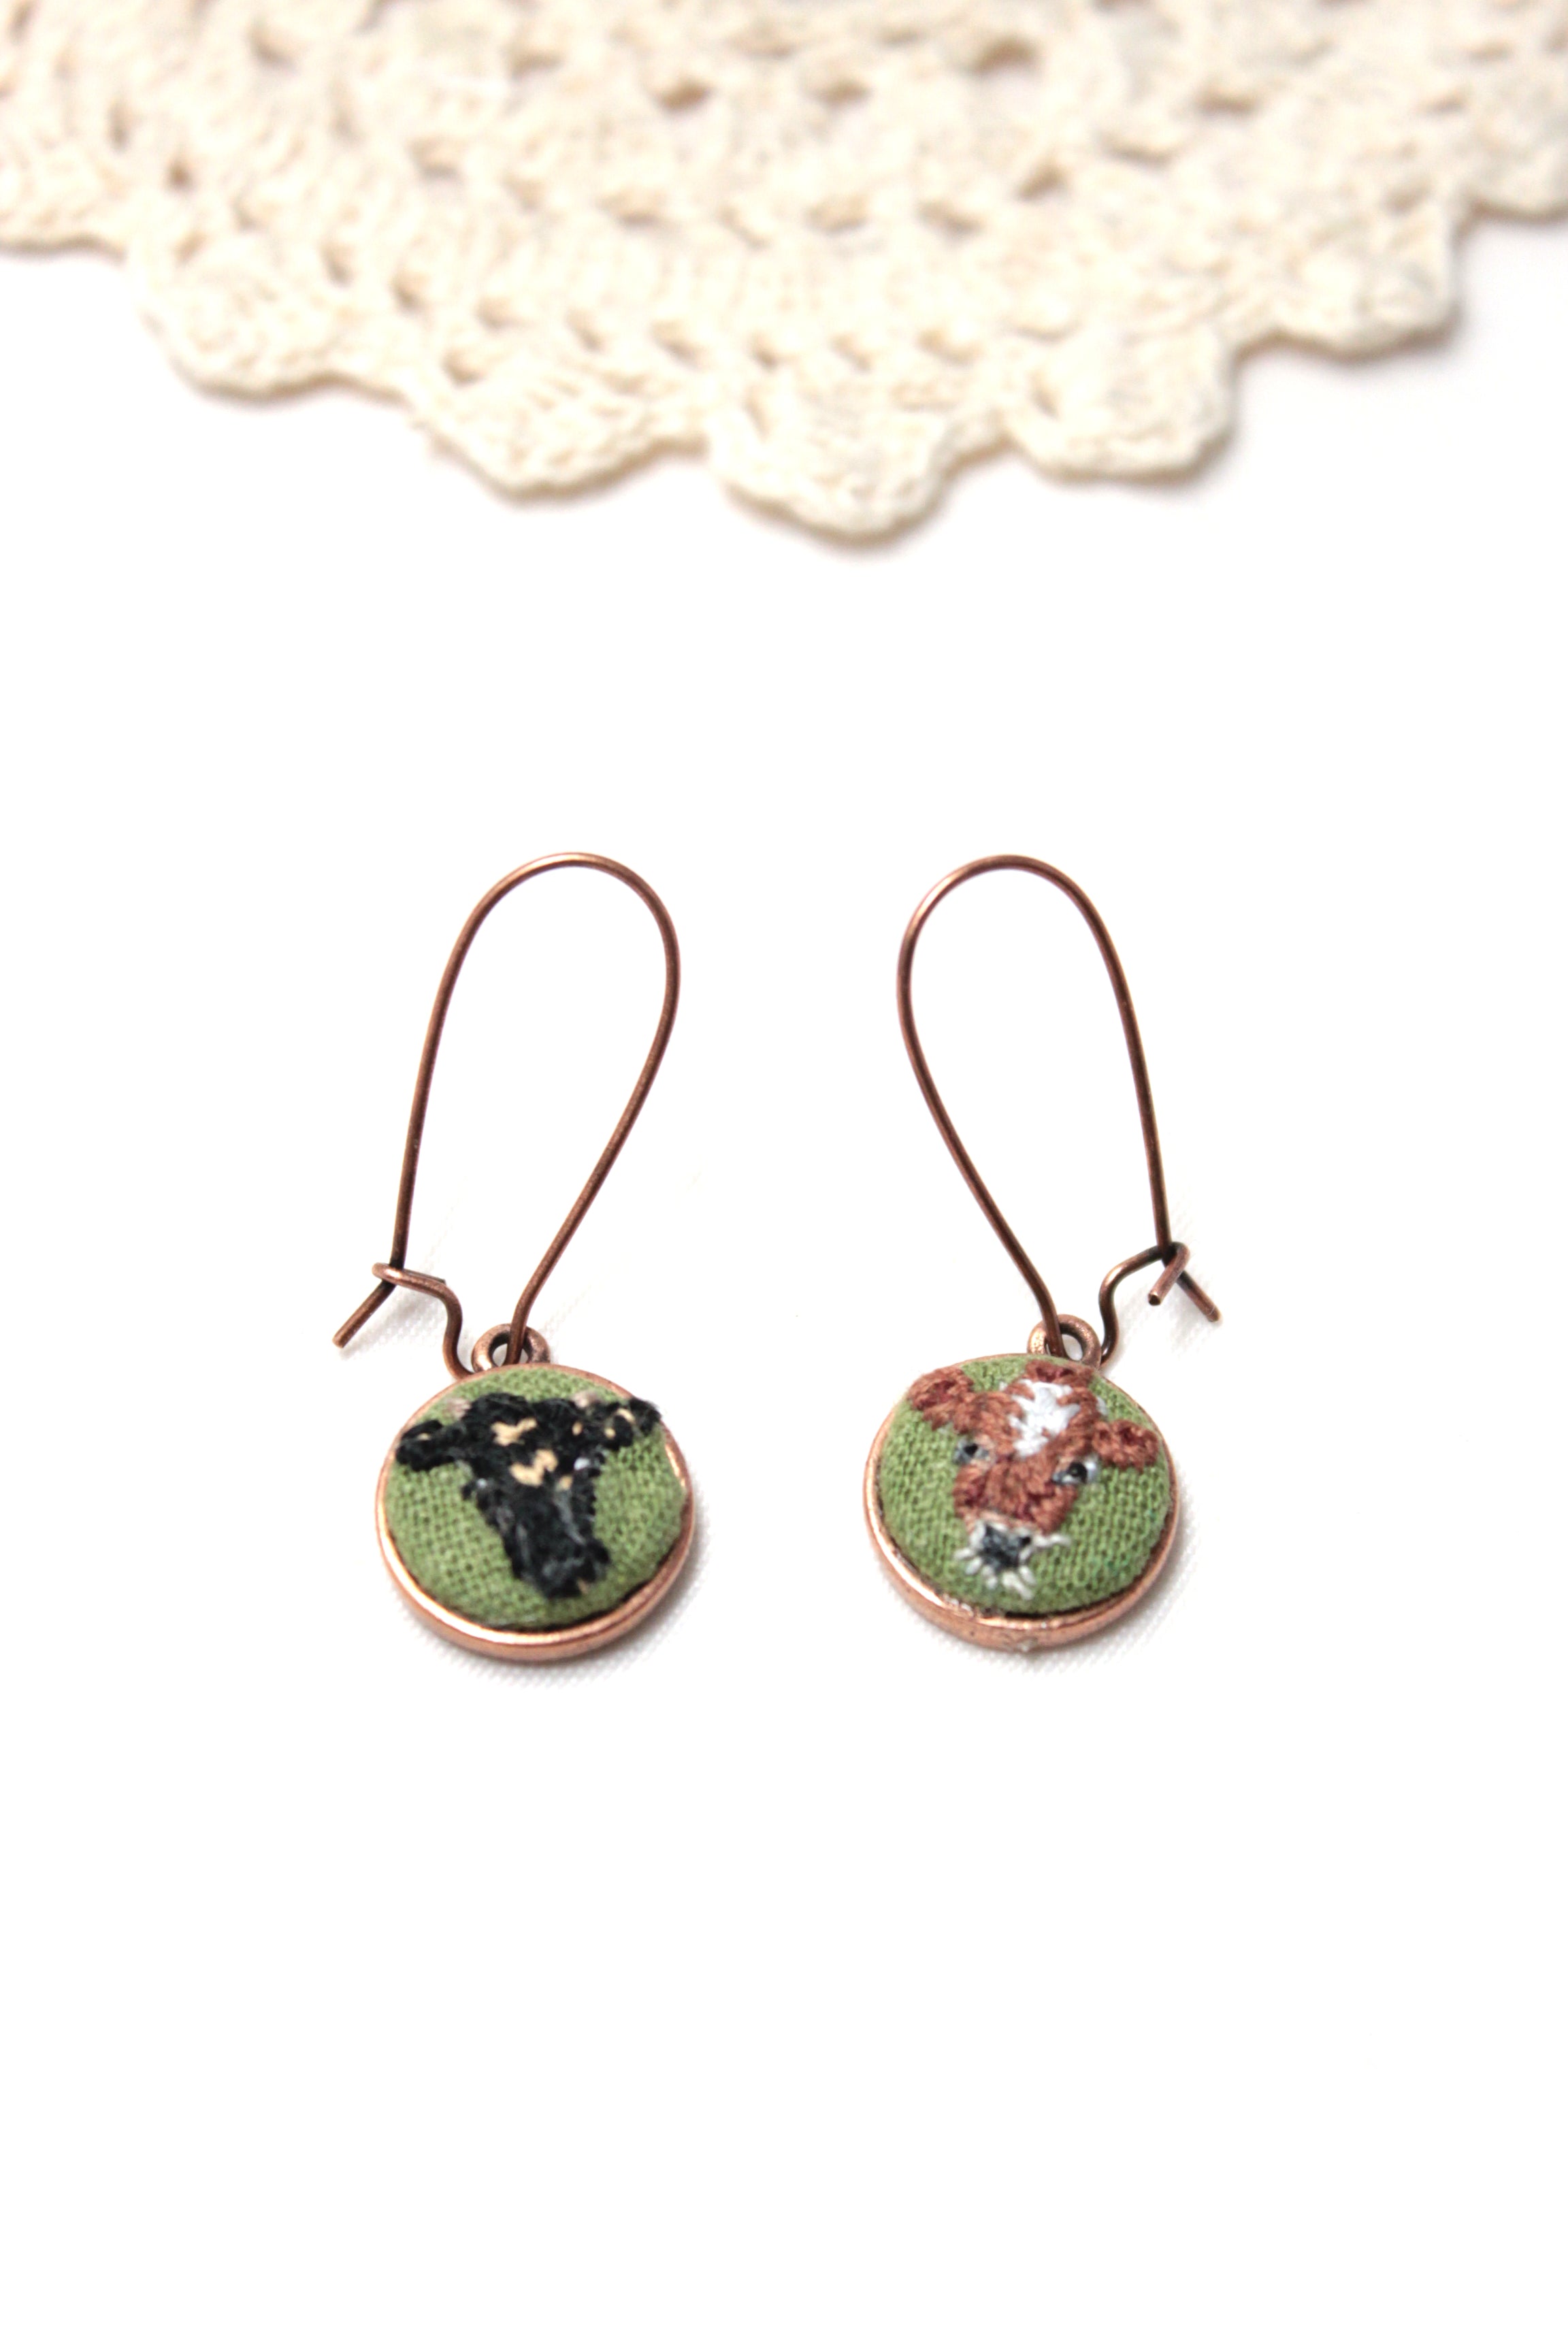 My Pretty Babi Embroidery Nash & Cedar Kidney Copper Cow Earrings